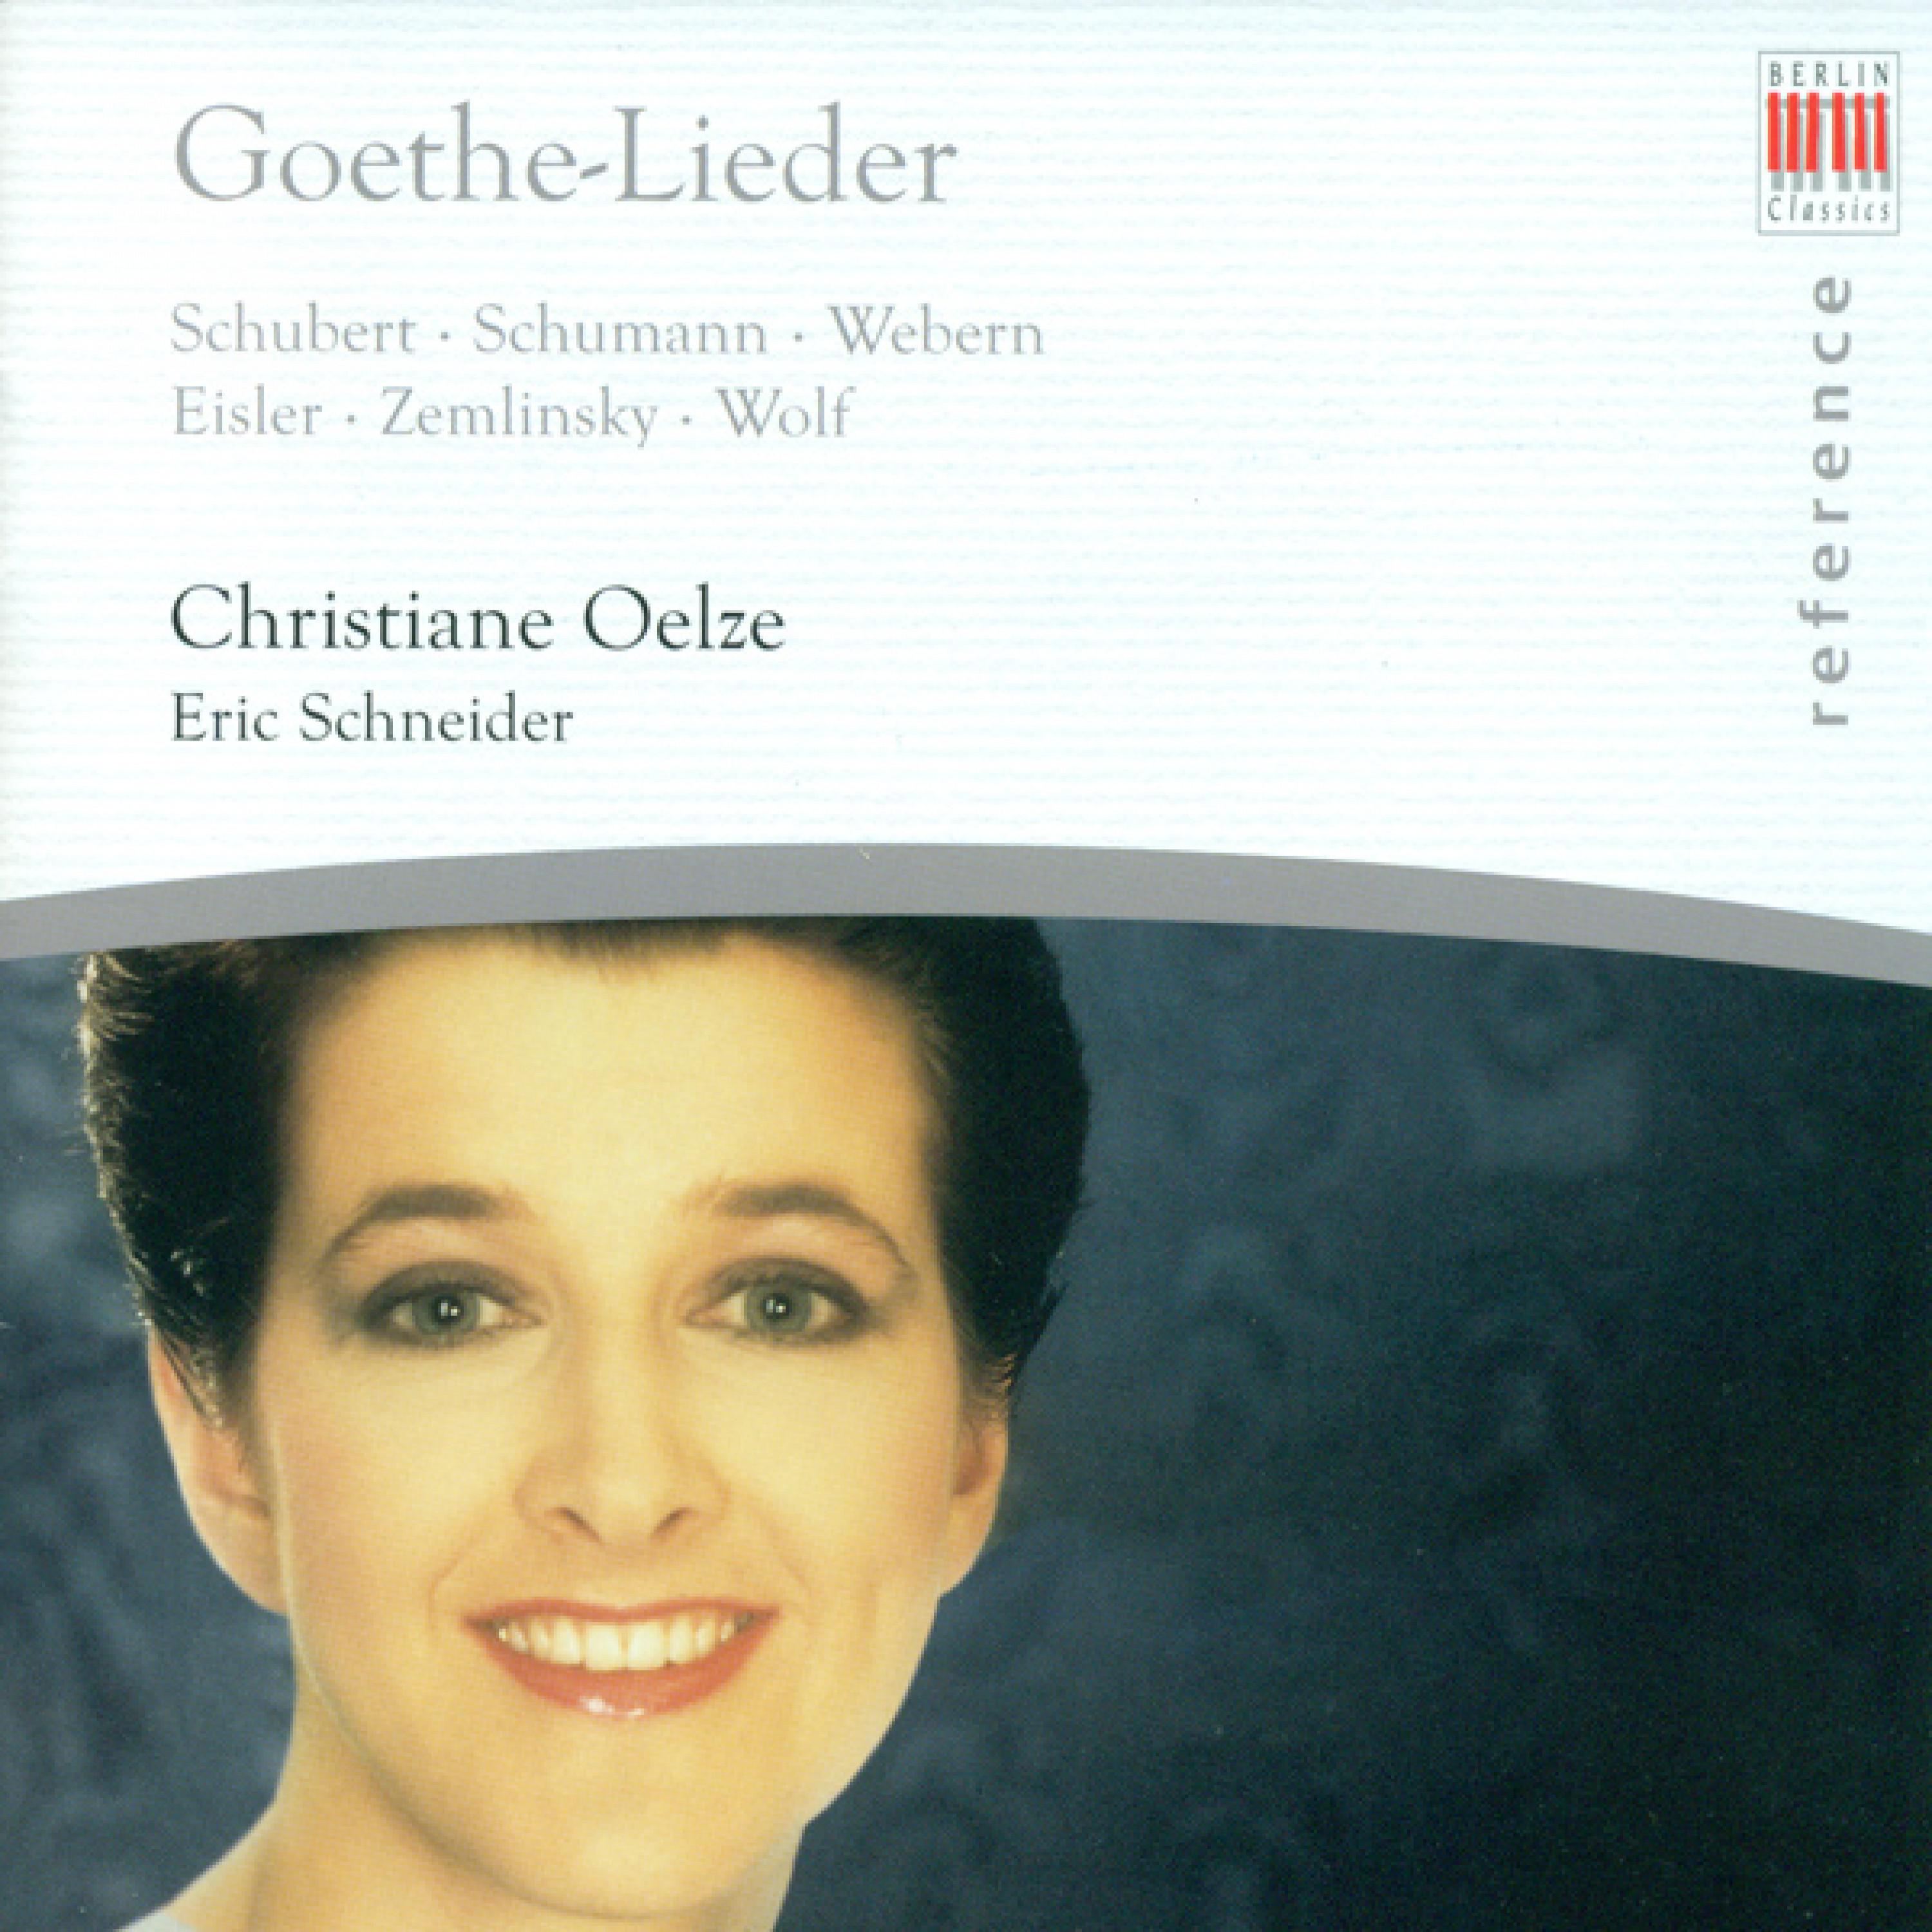 Vocal Recital: Christiane Oelze - SCHUBERT, F. / SCHUMANN, R. / WEBERN, A. / EISLER, H. / ZEMLINSKY, A. Von / WOLF, H. (Goethe-Lieder)